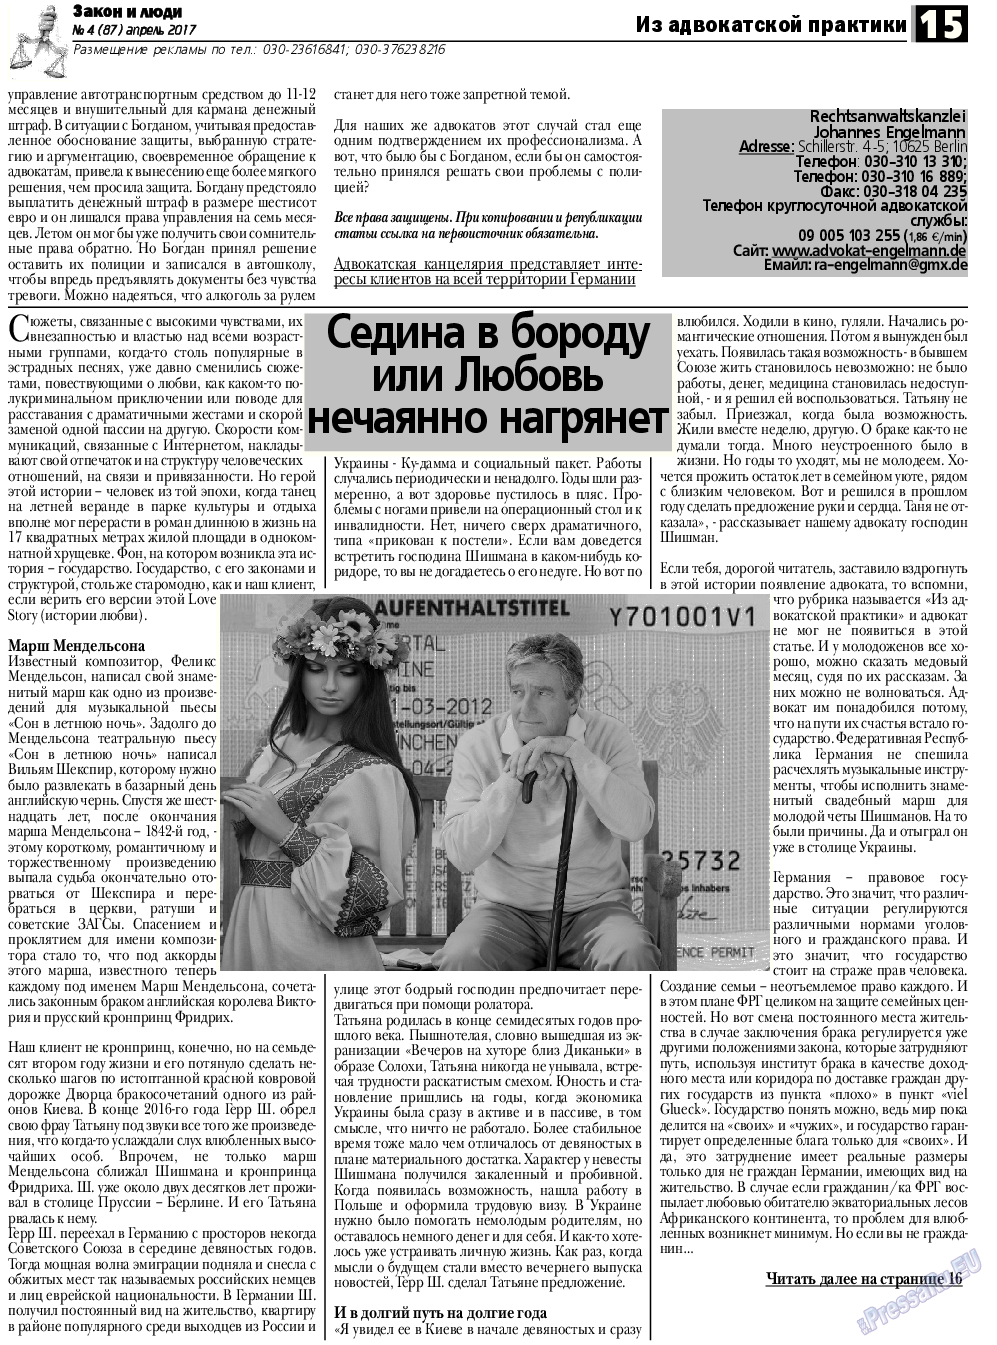 Закон и люди, газета. 2017 №4 стр.15